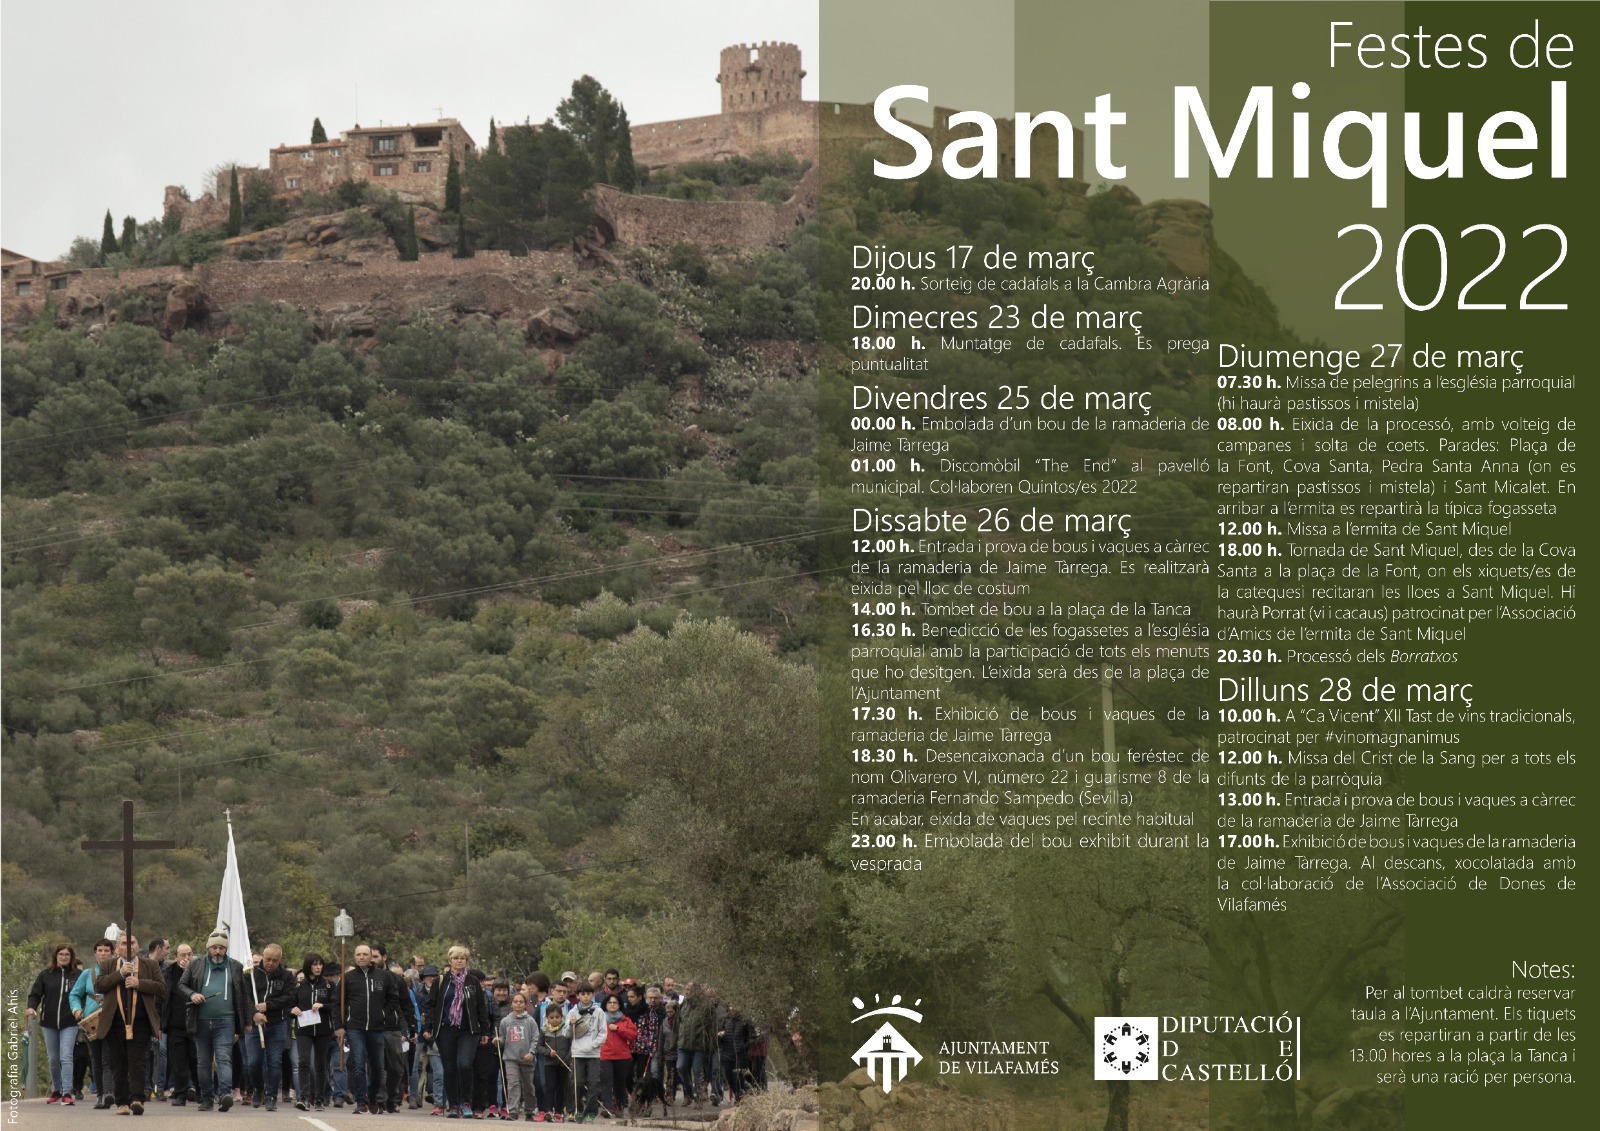 Festivities in honour of San Miguel